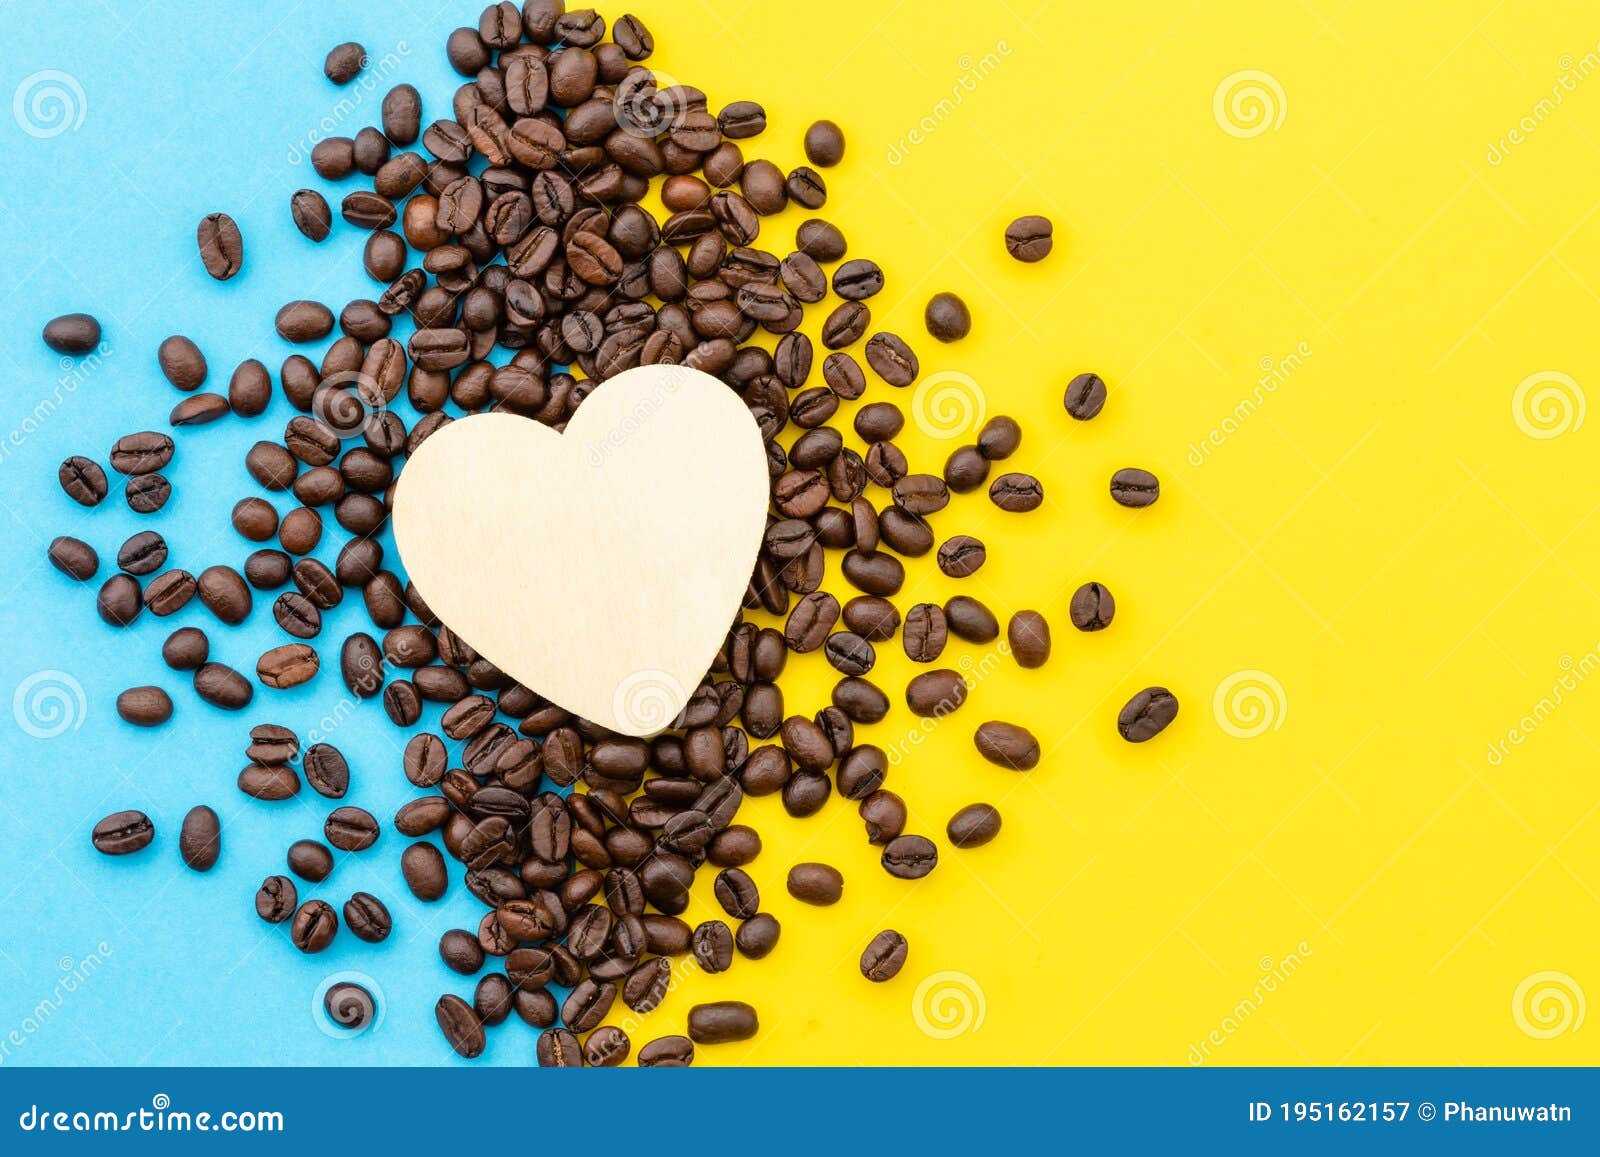 爱咖啡 向量例证. 插画 包括有 桂香, 艺术, 看板卡, 深奥, 要素, 盖子, 方式, 热奶咖啡, 乱画 - 27423284